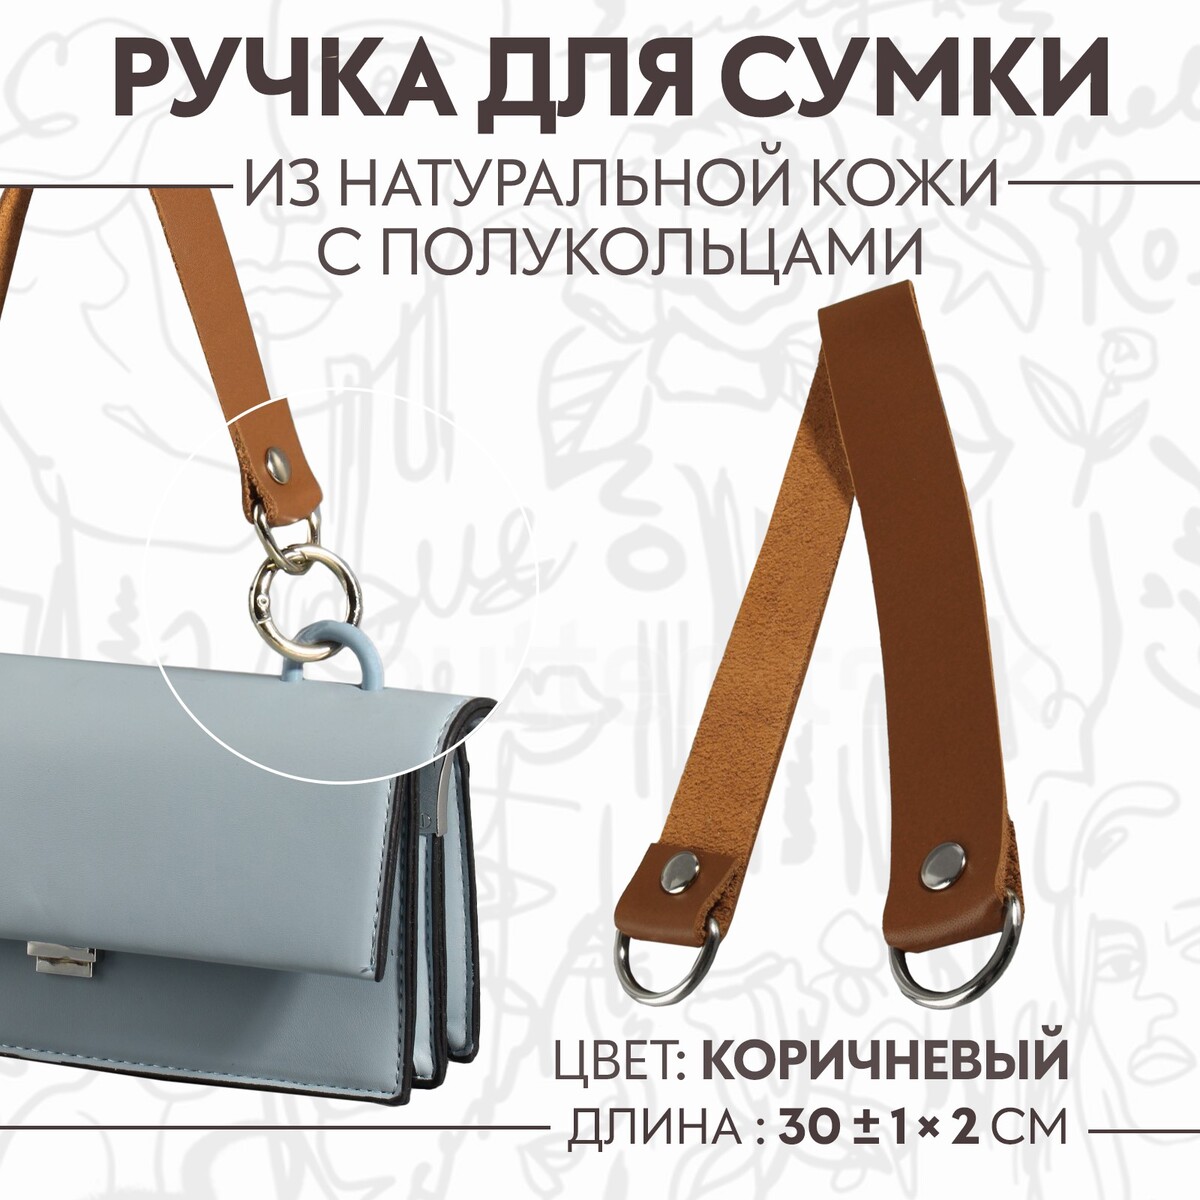 Ручка для сумки, 30 ± 1 × 2 см, цвет коричневый отпариватель ручной kitfort 2 в 1 кт 929 1 бело коричневый